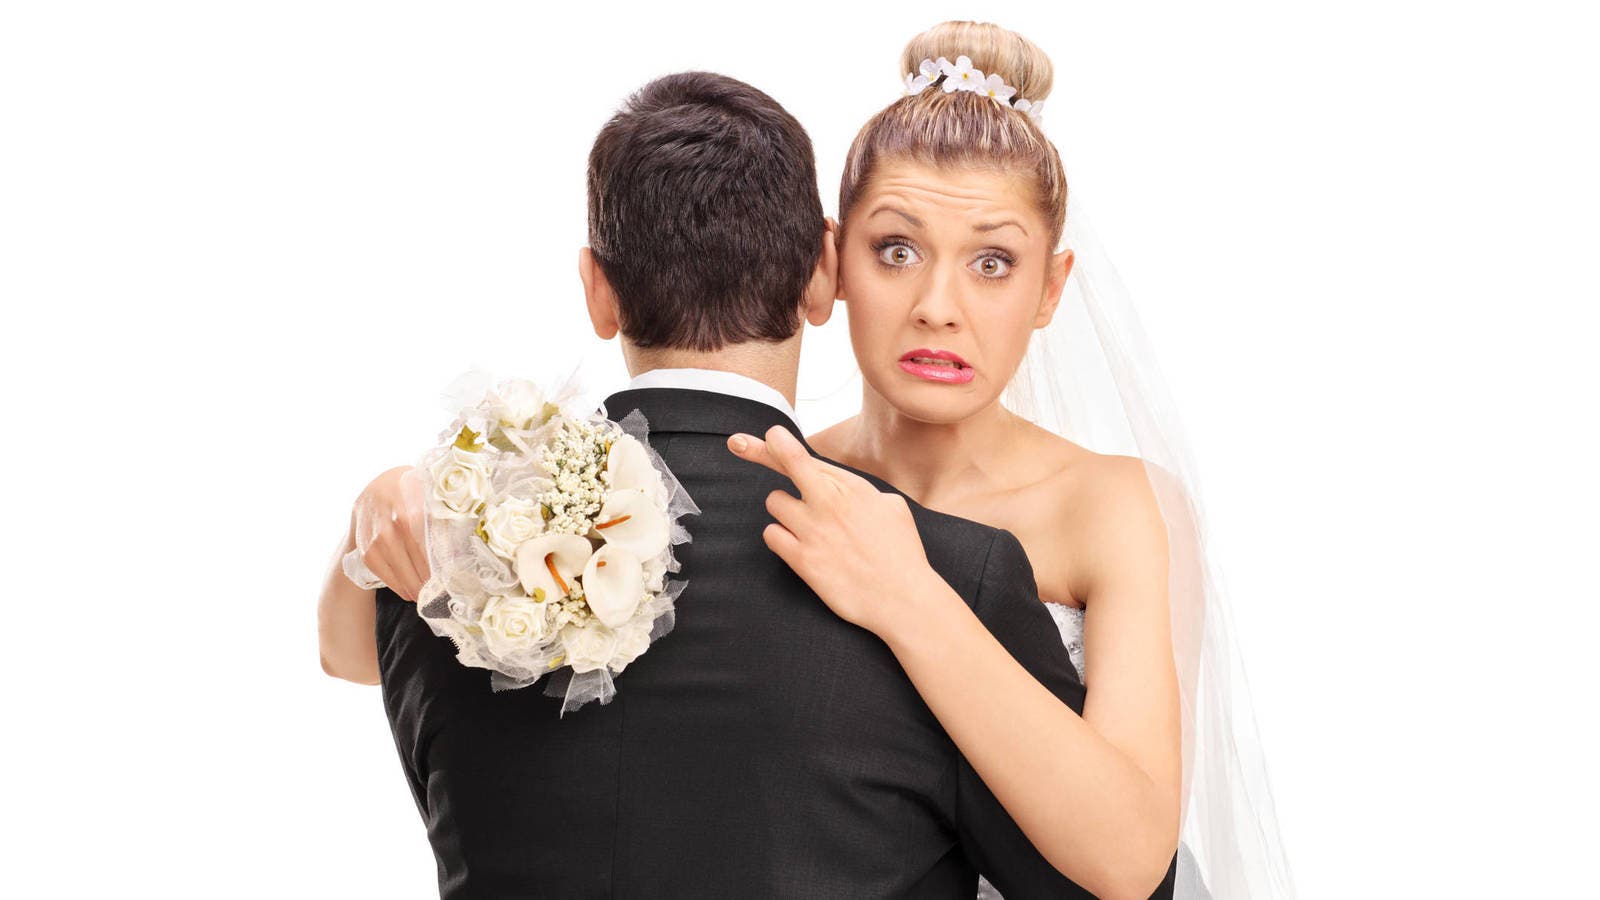 Preguntas que necesitas responder antes de casarte «podrían cambiar tu decisión»